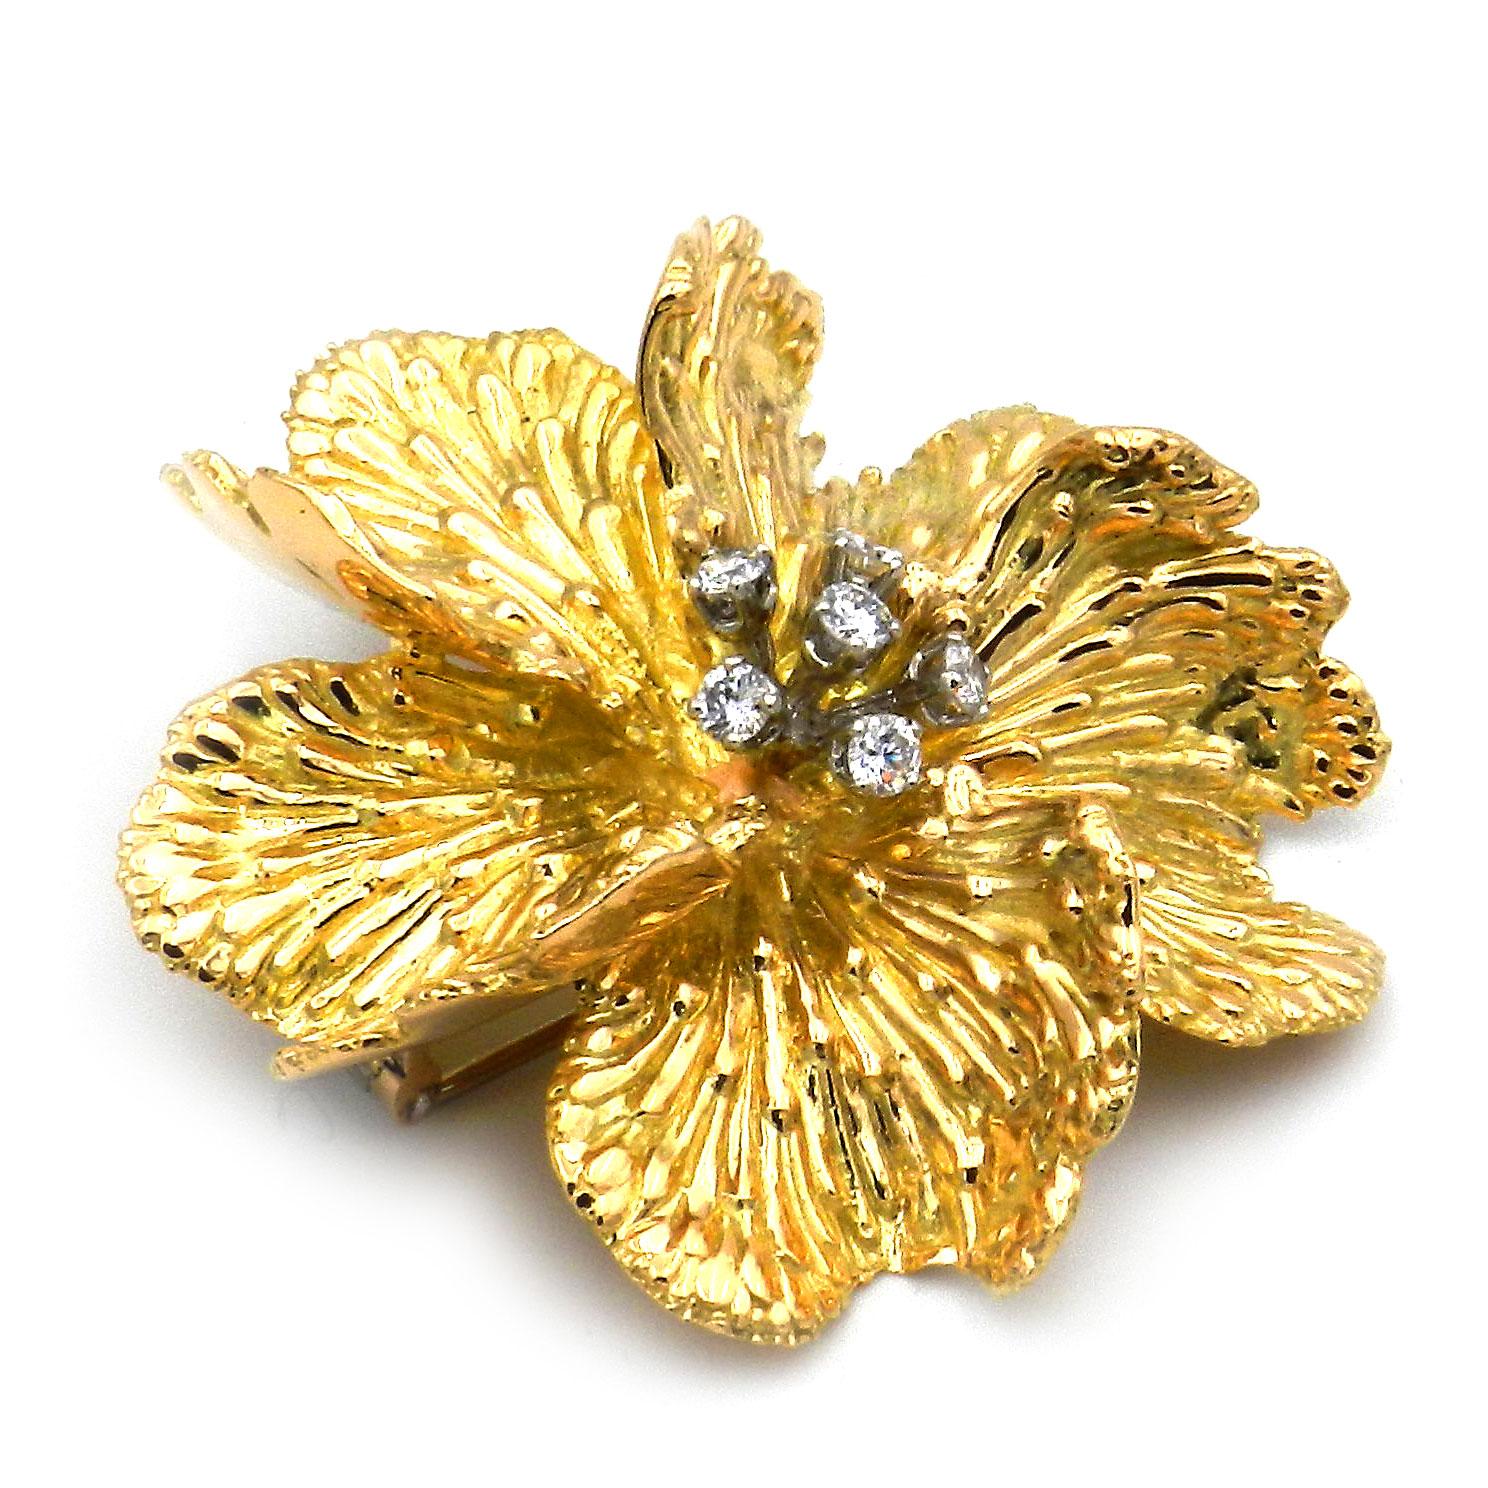 Broche Fleur en or 18K avec diamants, Vintage By Boucheron

Cette broche représentative en diamants est conçue comme une grande fleur, dont les pétales naturels ont été sculptés à la main dans de l'or finement structuré à haute teneur en carats et